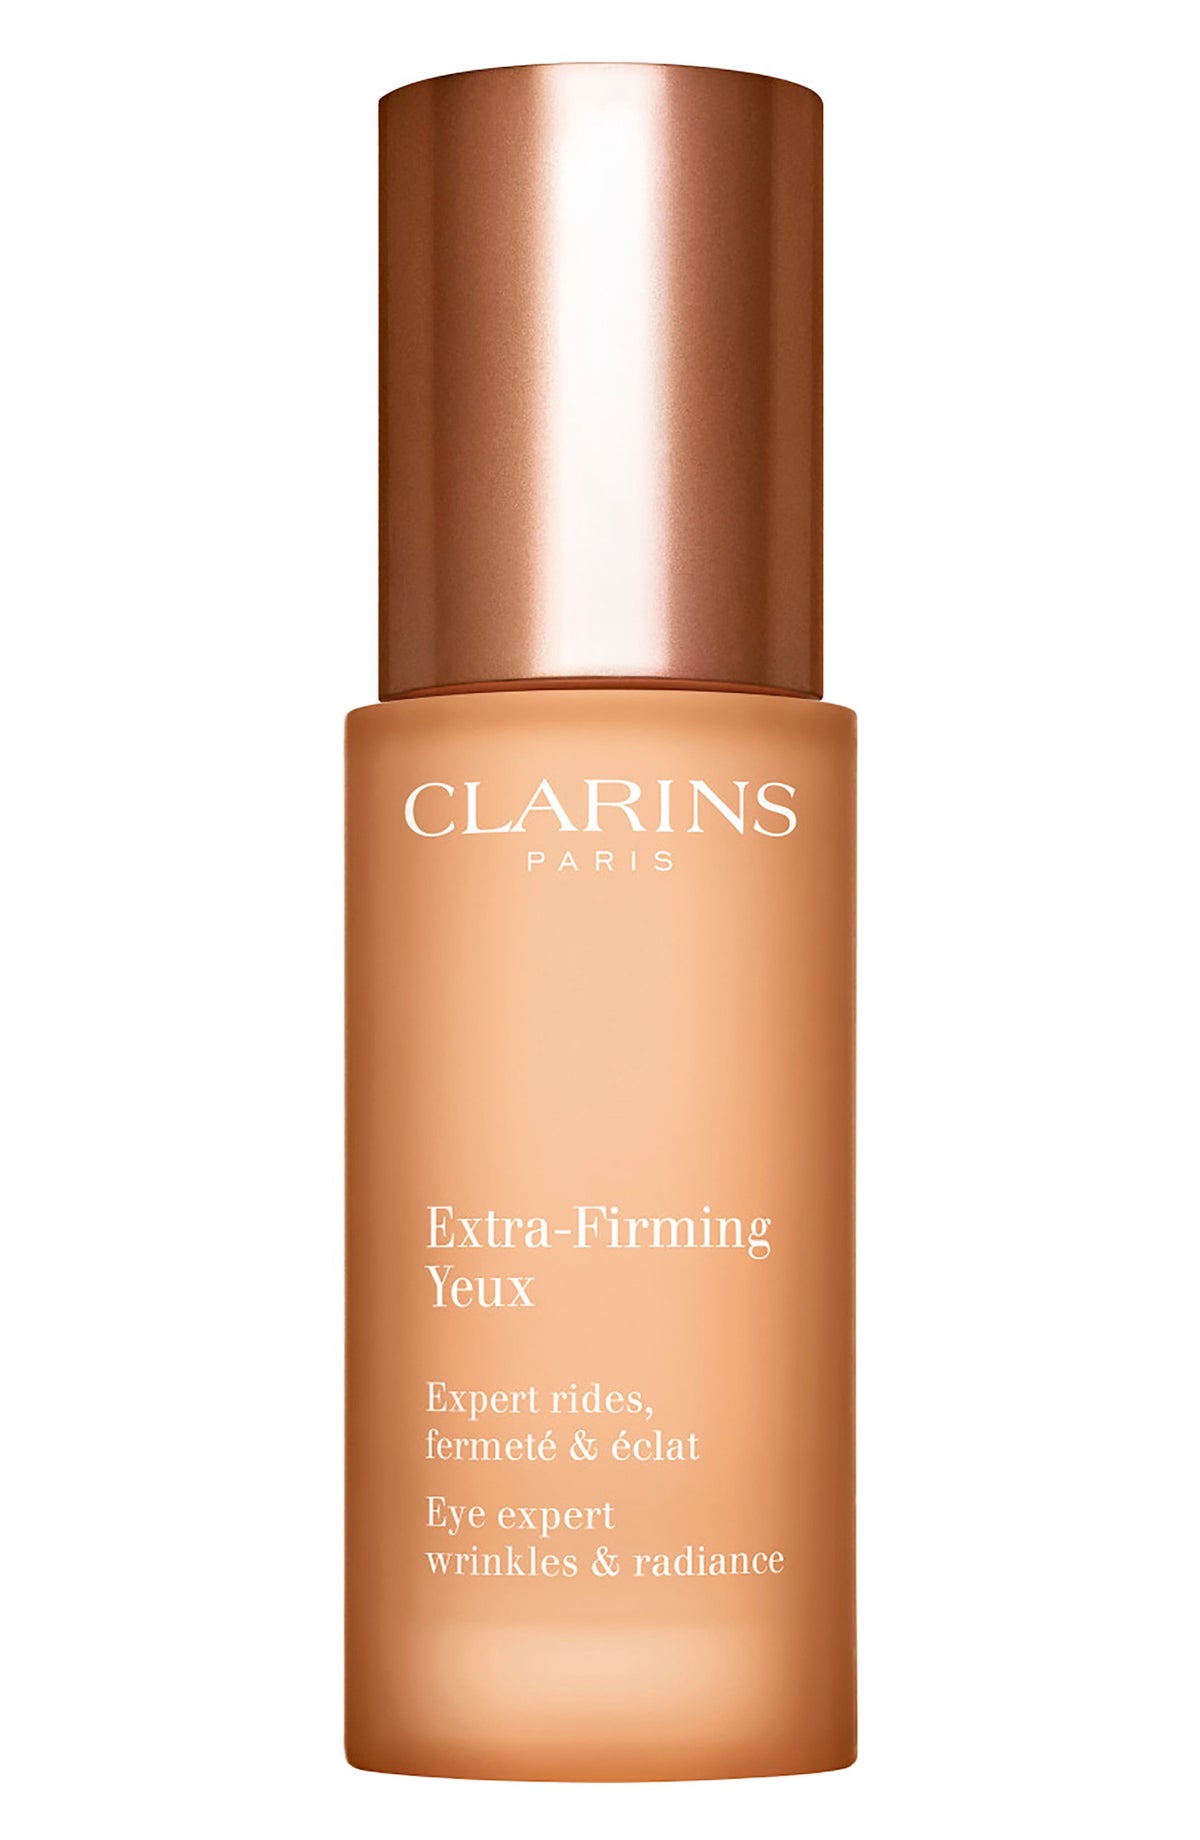 Clarins Extra-Firming Eye